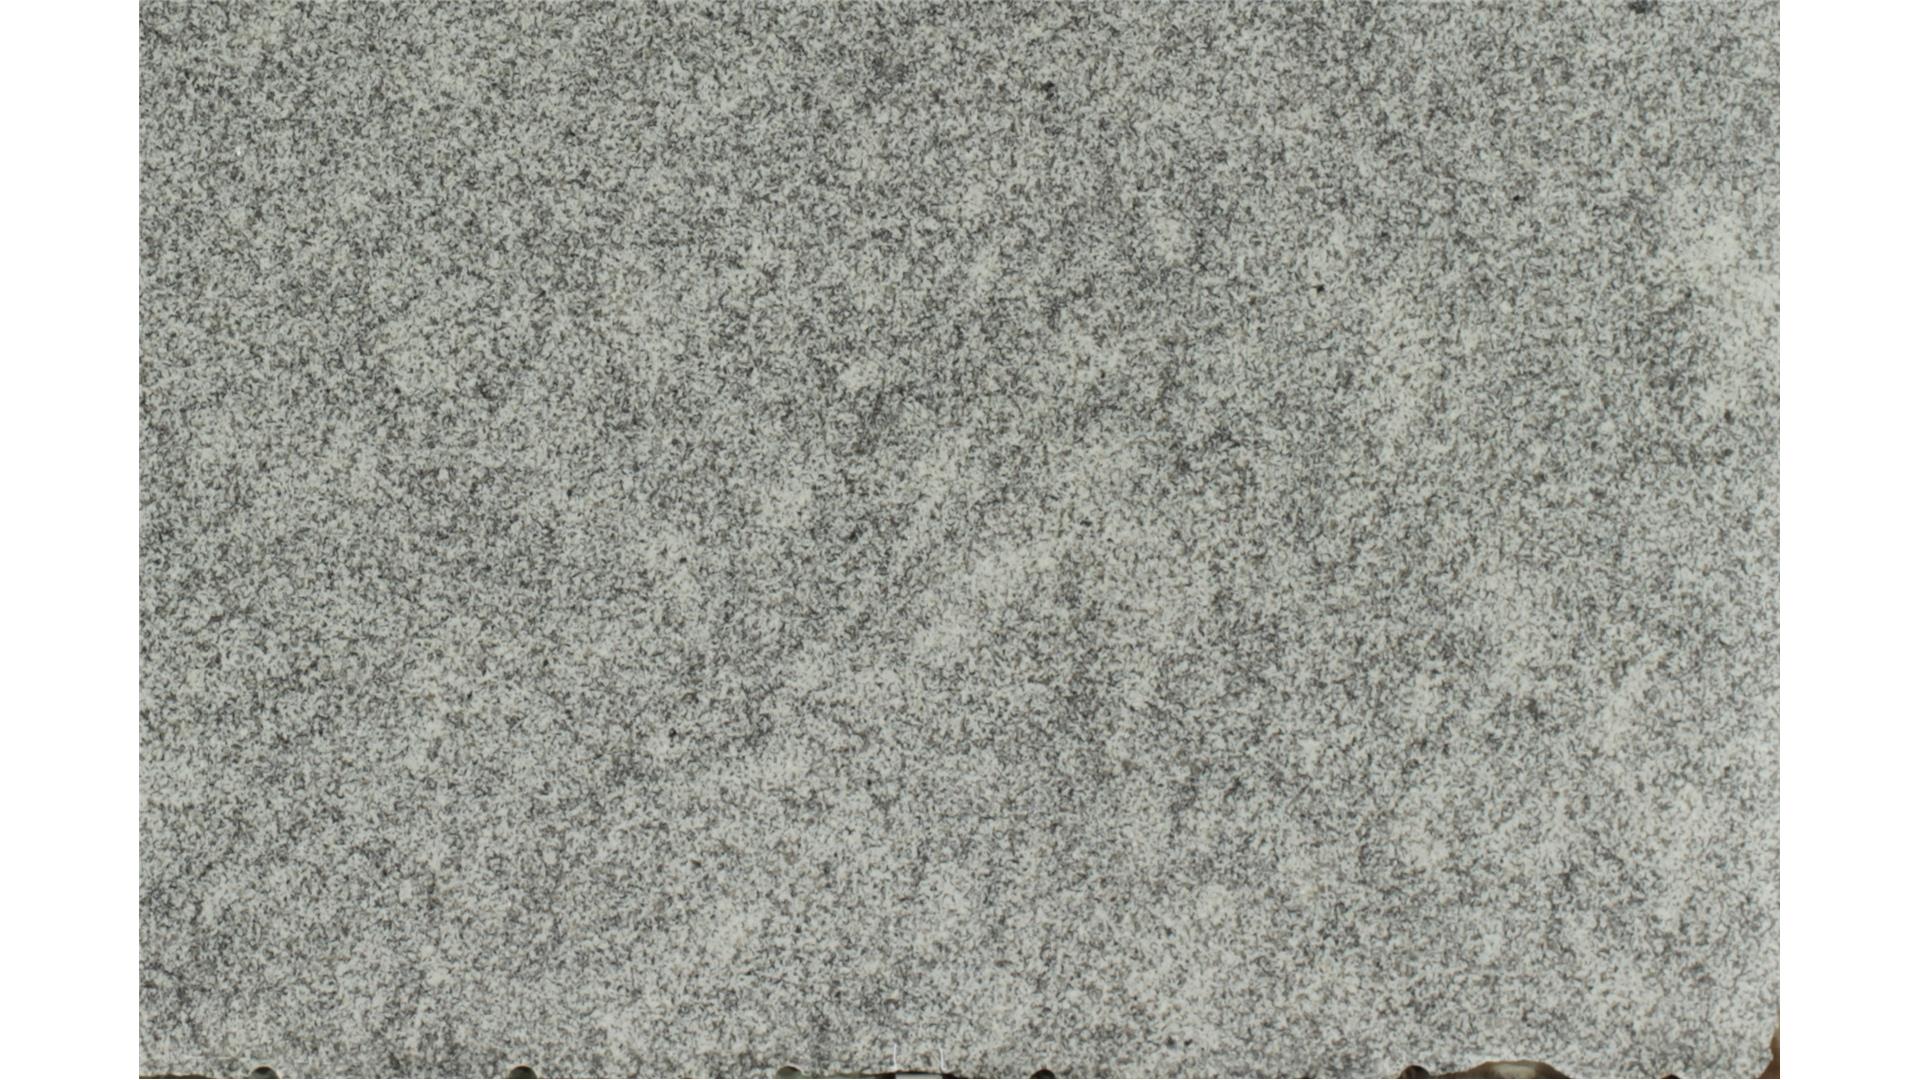 Osprey White 3 cm Granite Slabs